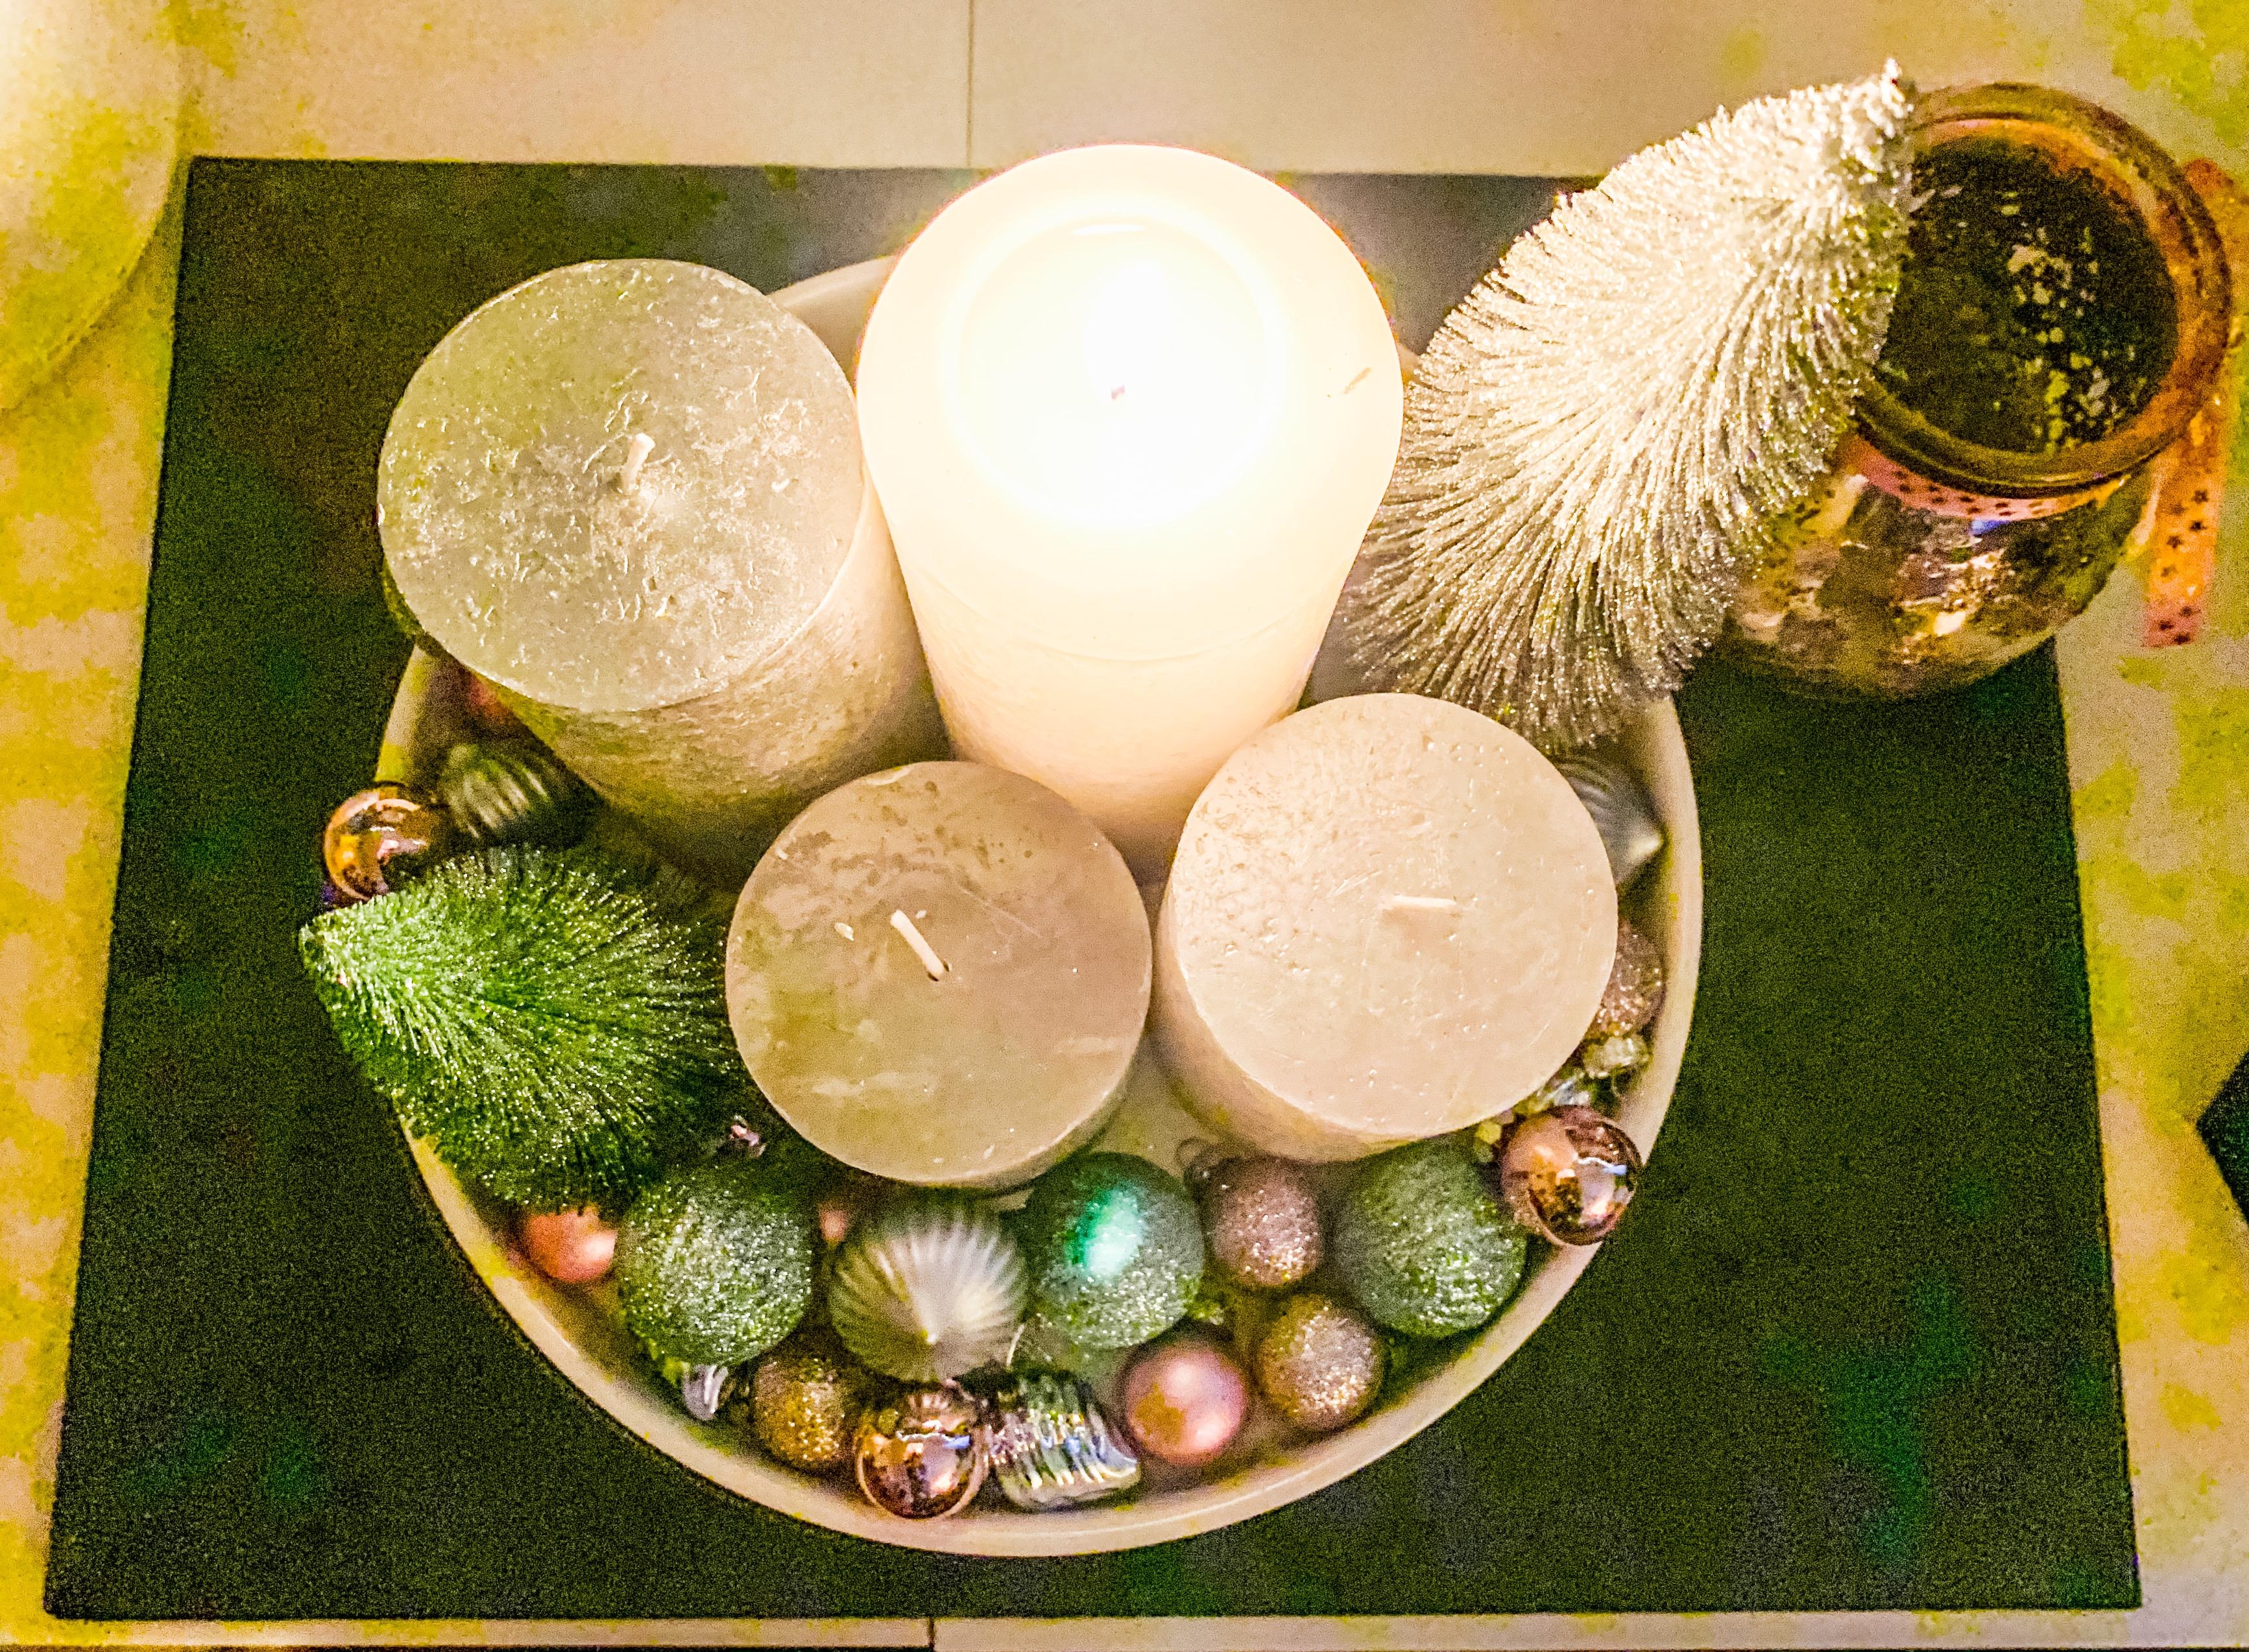 Einfach und schick! Teller, 4 Kerzen, einige kleine Weihnachtskugeln, 2 Dekotannen und fertig. ☺️
#adventskranz 